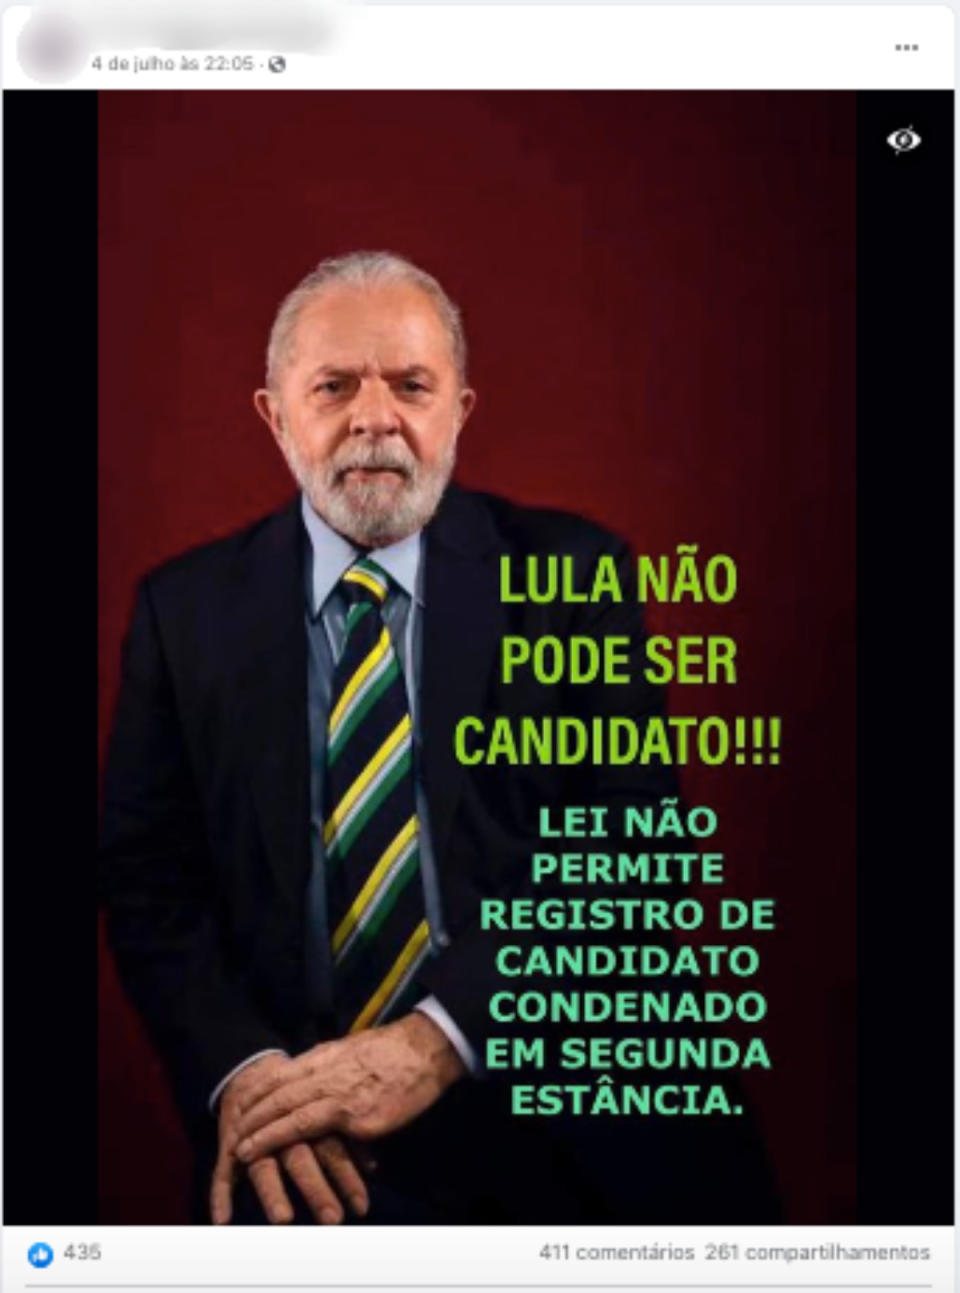 Captura de tela de uma publicação que alega que o ex-presidente Lula não pode ser candidato por ter sido condenado em segunda instância (Foto: Facebook / Reprodução)
